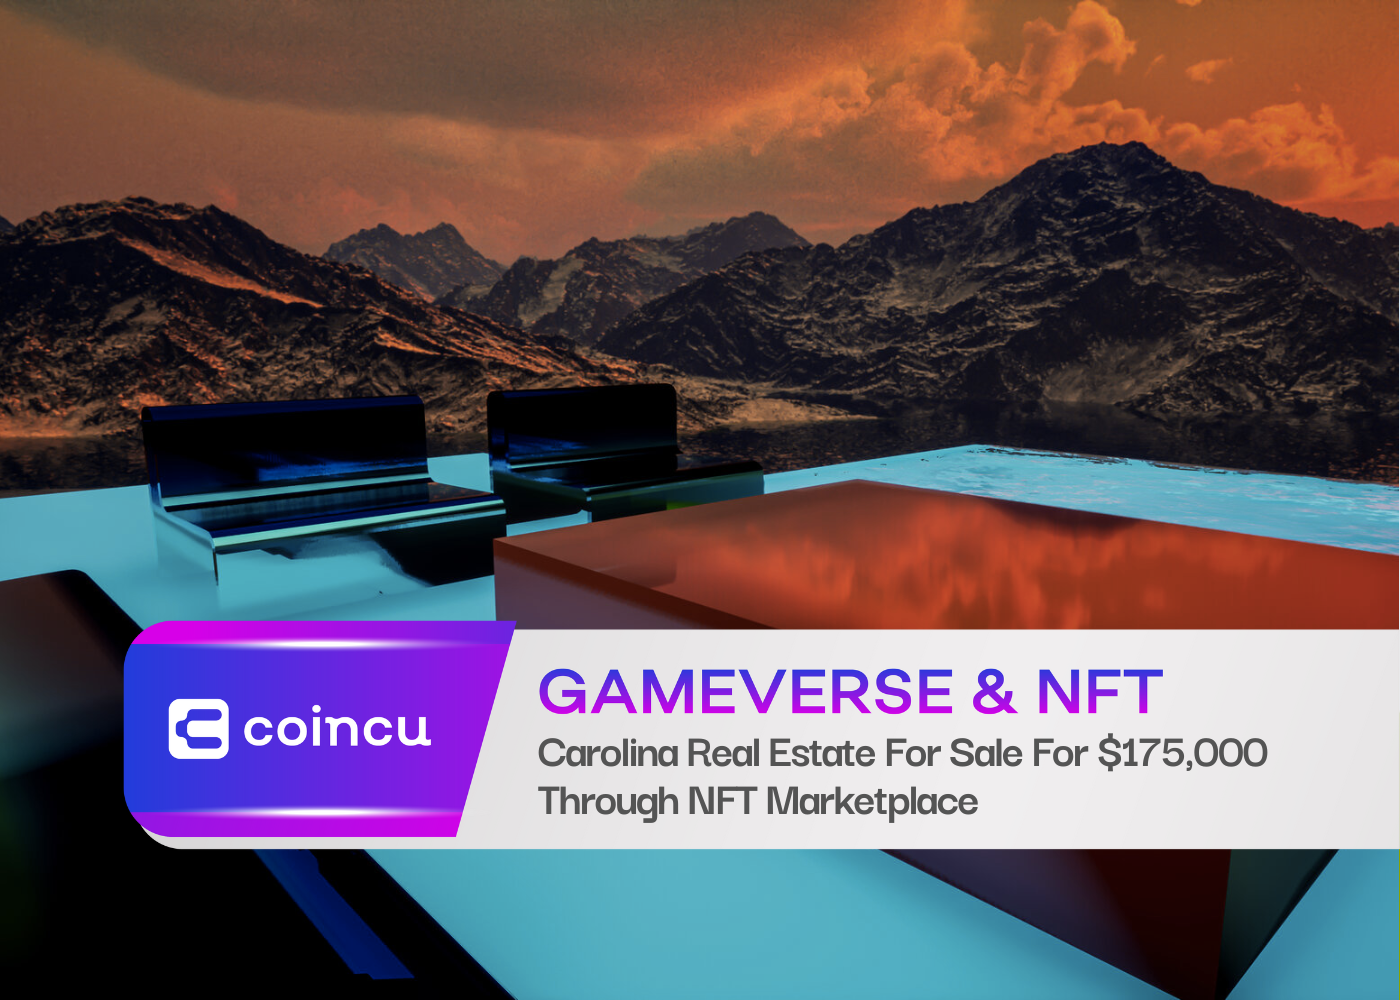 Bất động sản Carolina được rao bán với giá 175,000 USD thông qua thị trường NFT